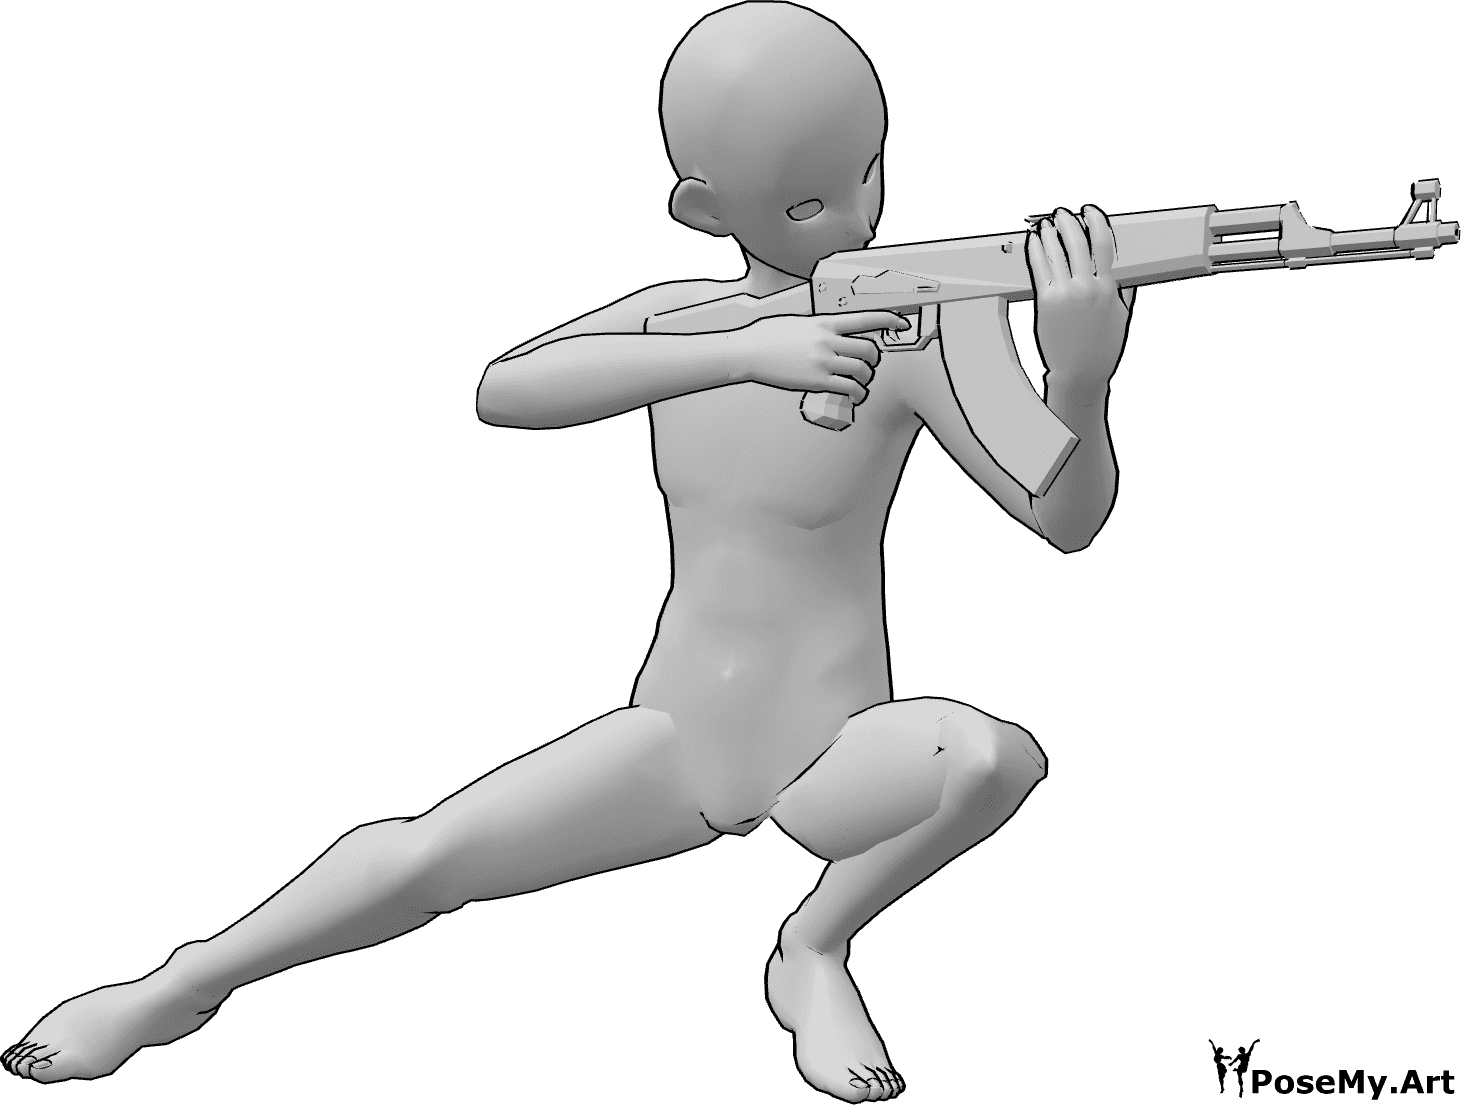 Riferimento alle pose- Uomo accovacciato in posizione di mira - L'uomo anonimo è accovacciato e punta la pistola con entrambe le mani.